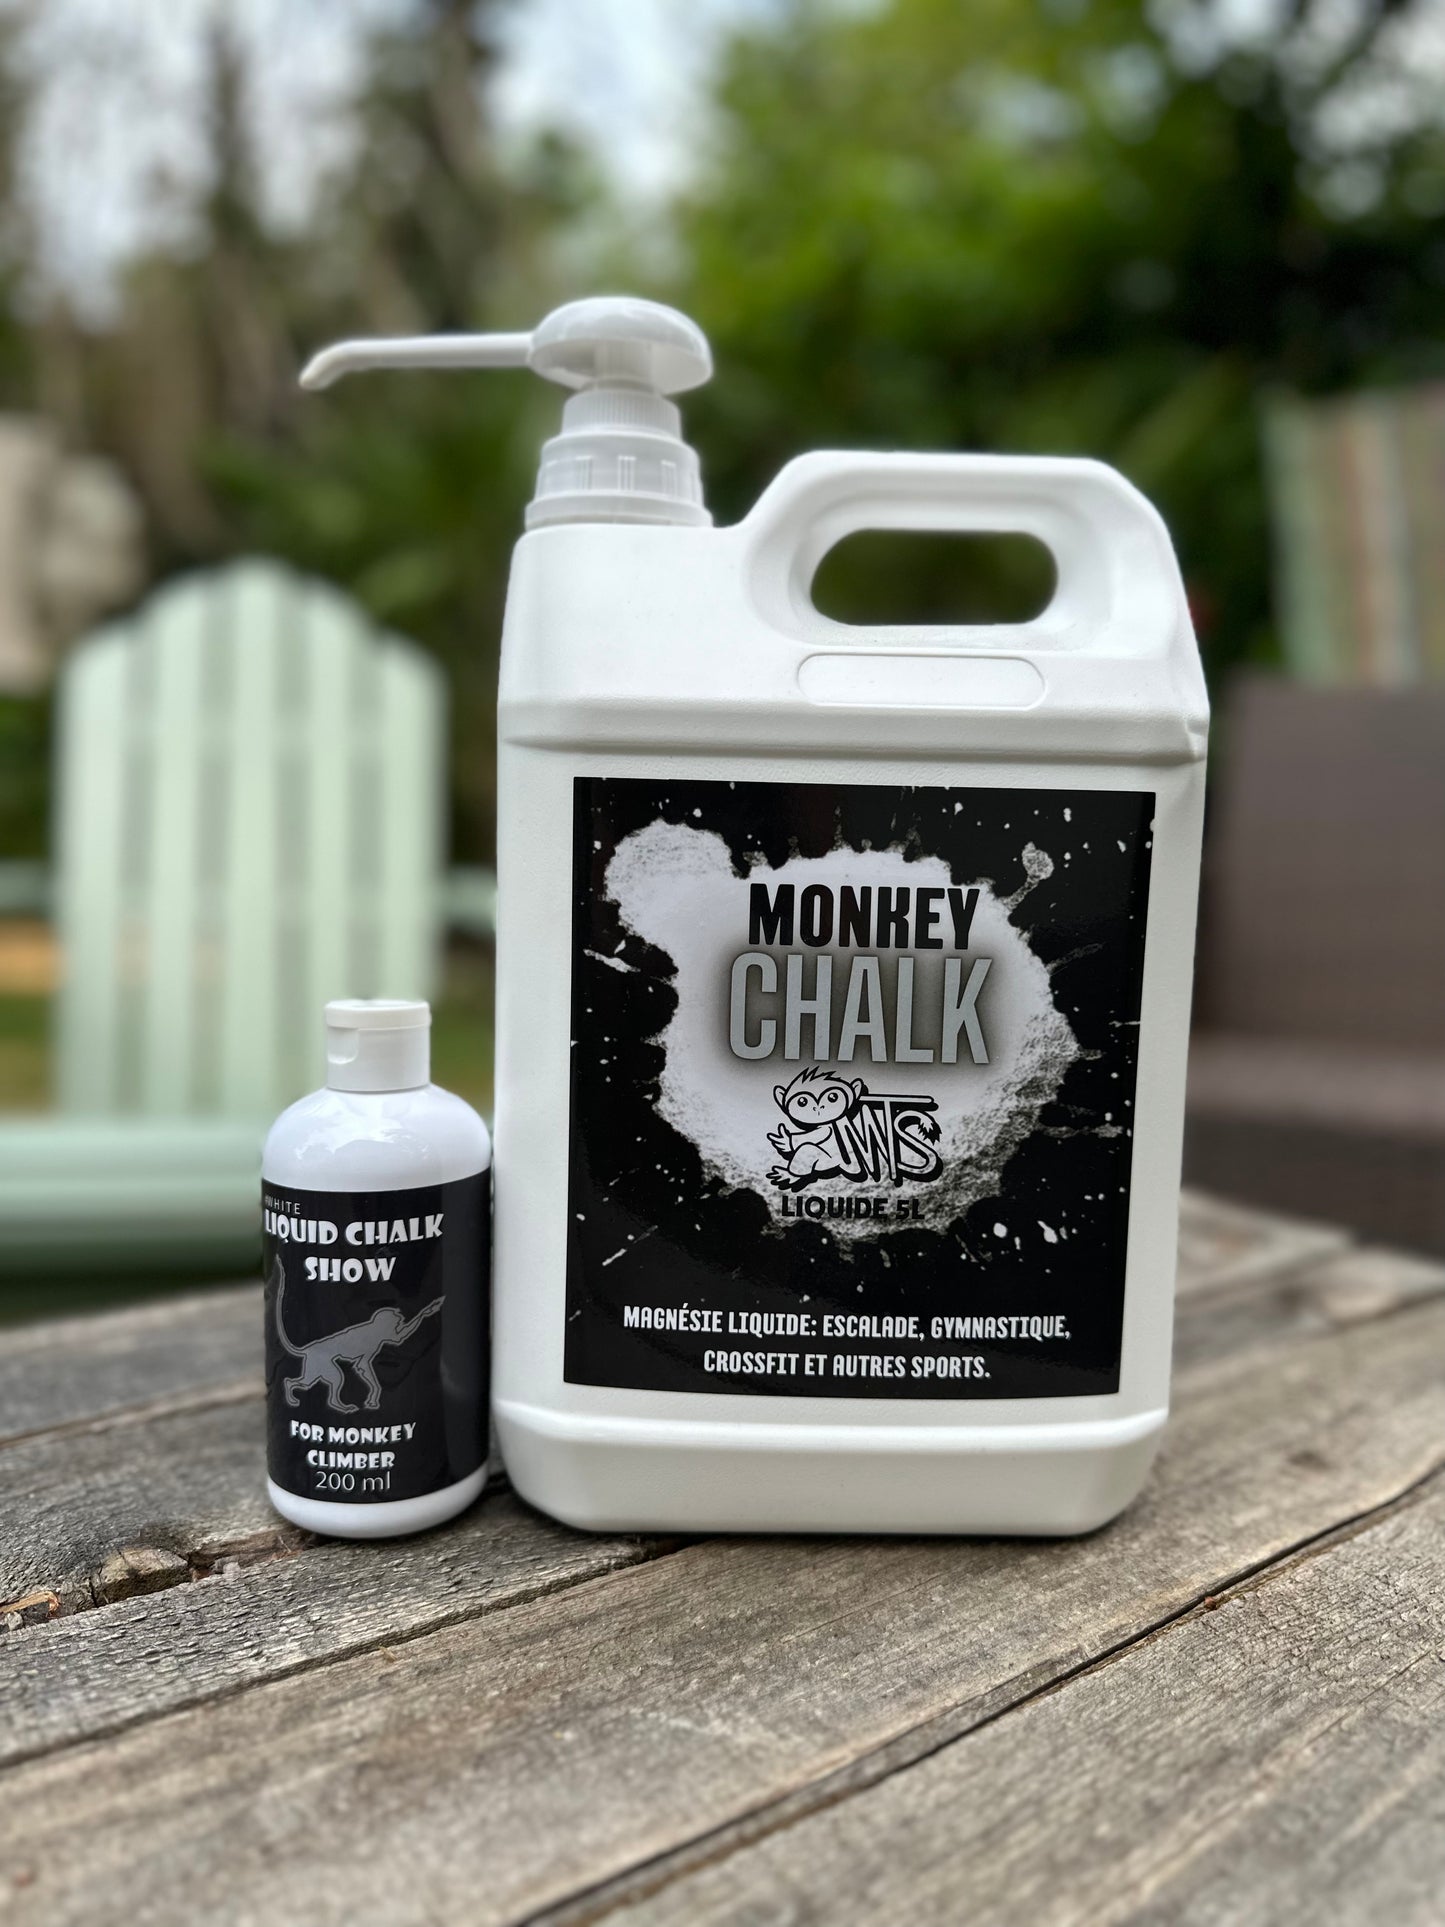 Monkey Chalk 5L magnésie liquide avec Pompe de recharge